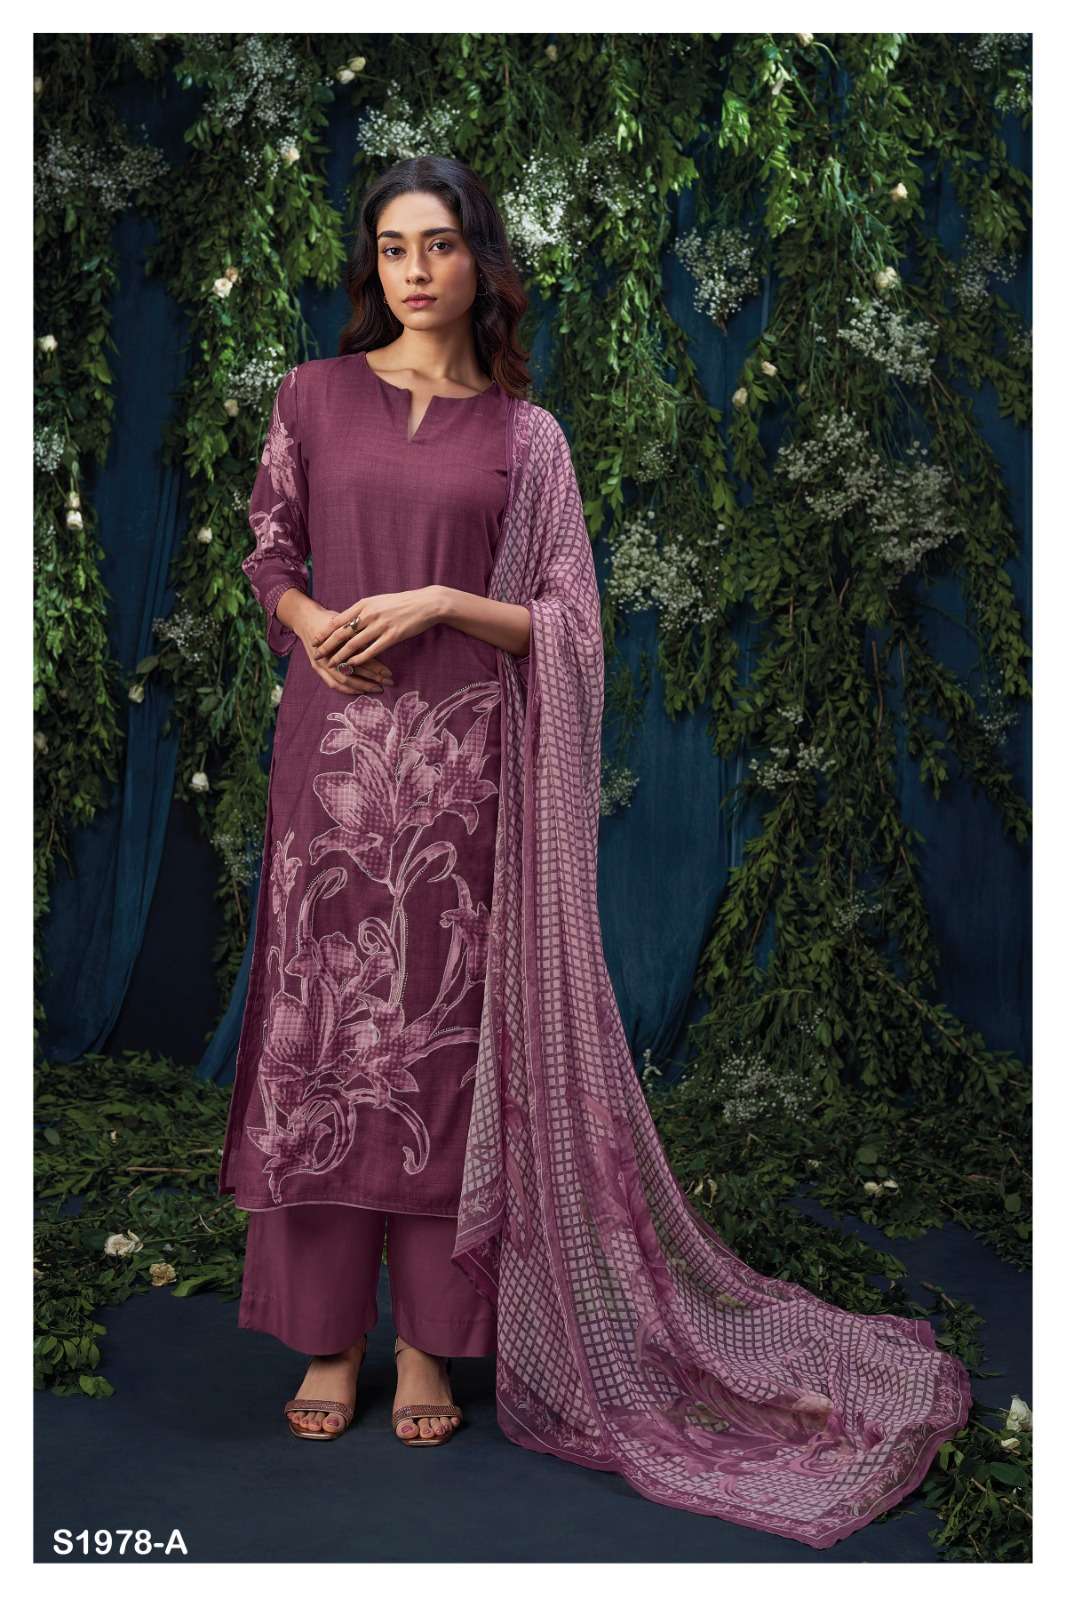 ganga payton 1978 colour series designer wedding wear pakistani salwar kameez wholesaler surat gujarat